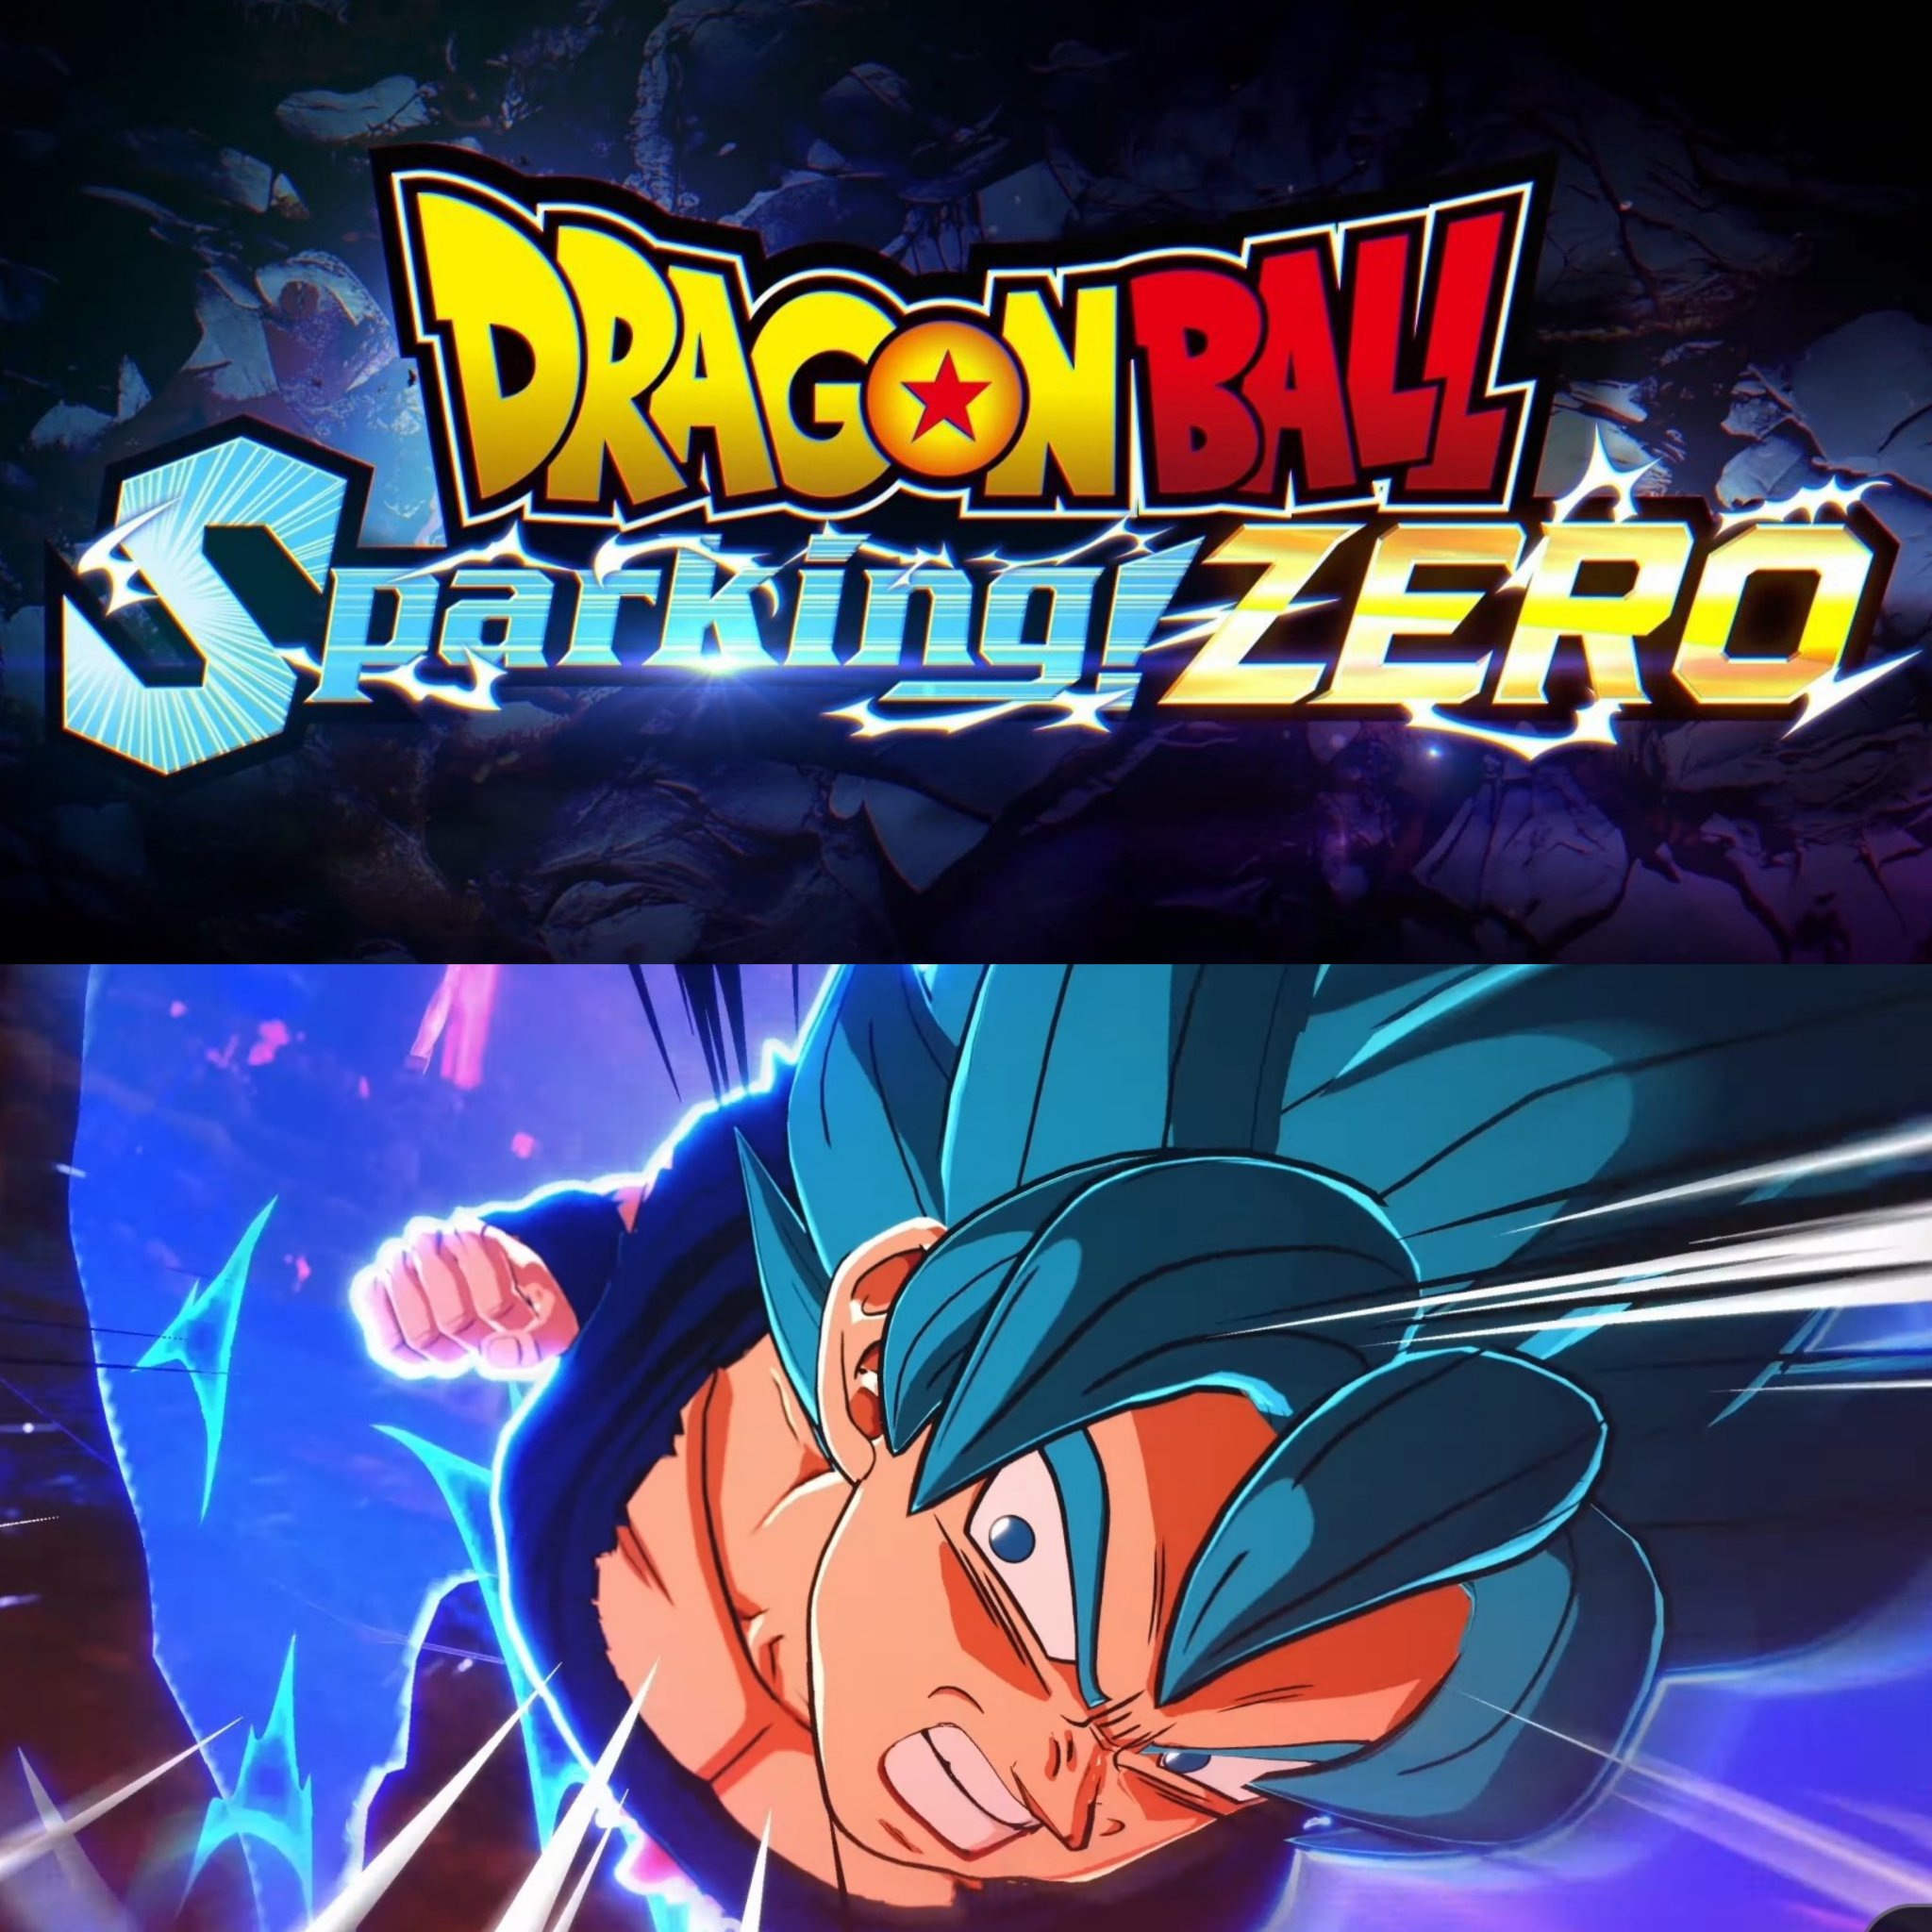 Dragon Ball: Sparking Zero Producer Says Game Will Have Budokai Tenkaichi's  Spirit, Nostalgia - IGN